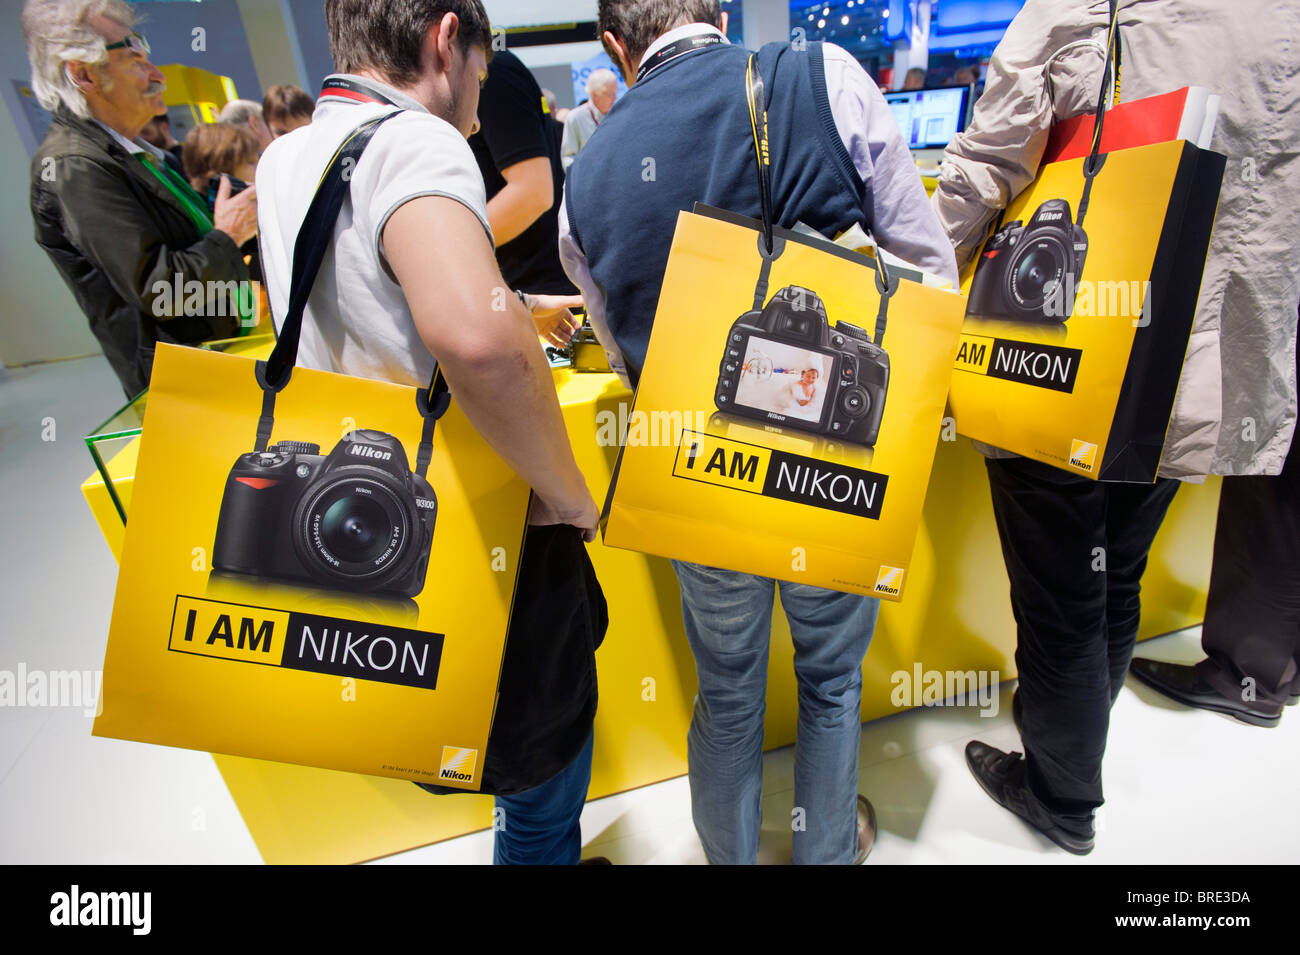 Molte persone a Nikon stand Sony al Photokina digital imaging trade show di Colonia Germania Foto Stock